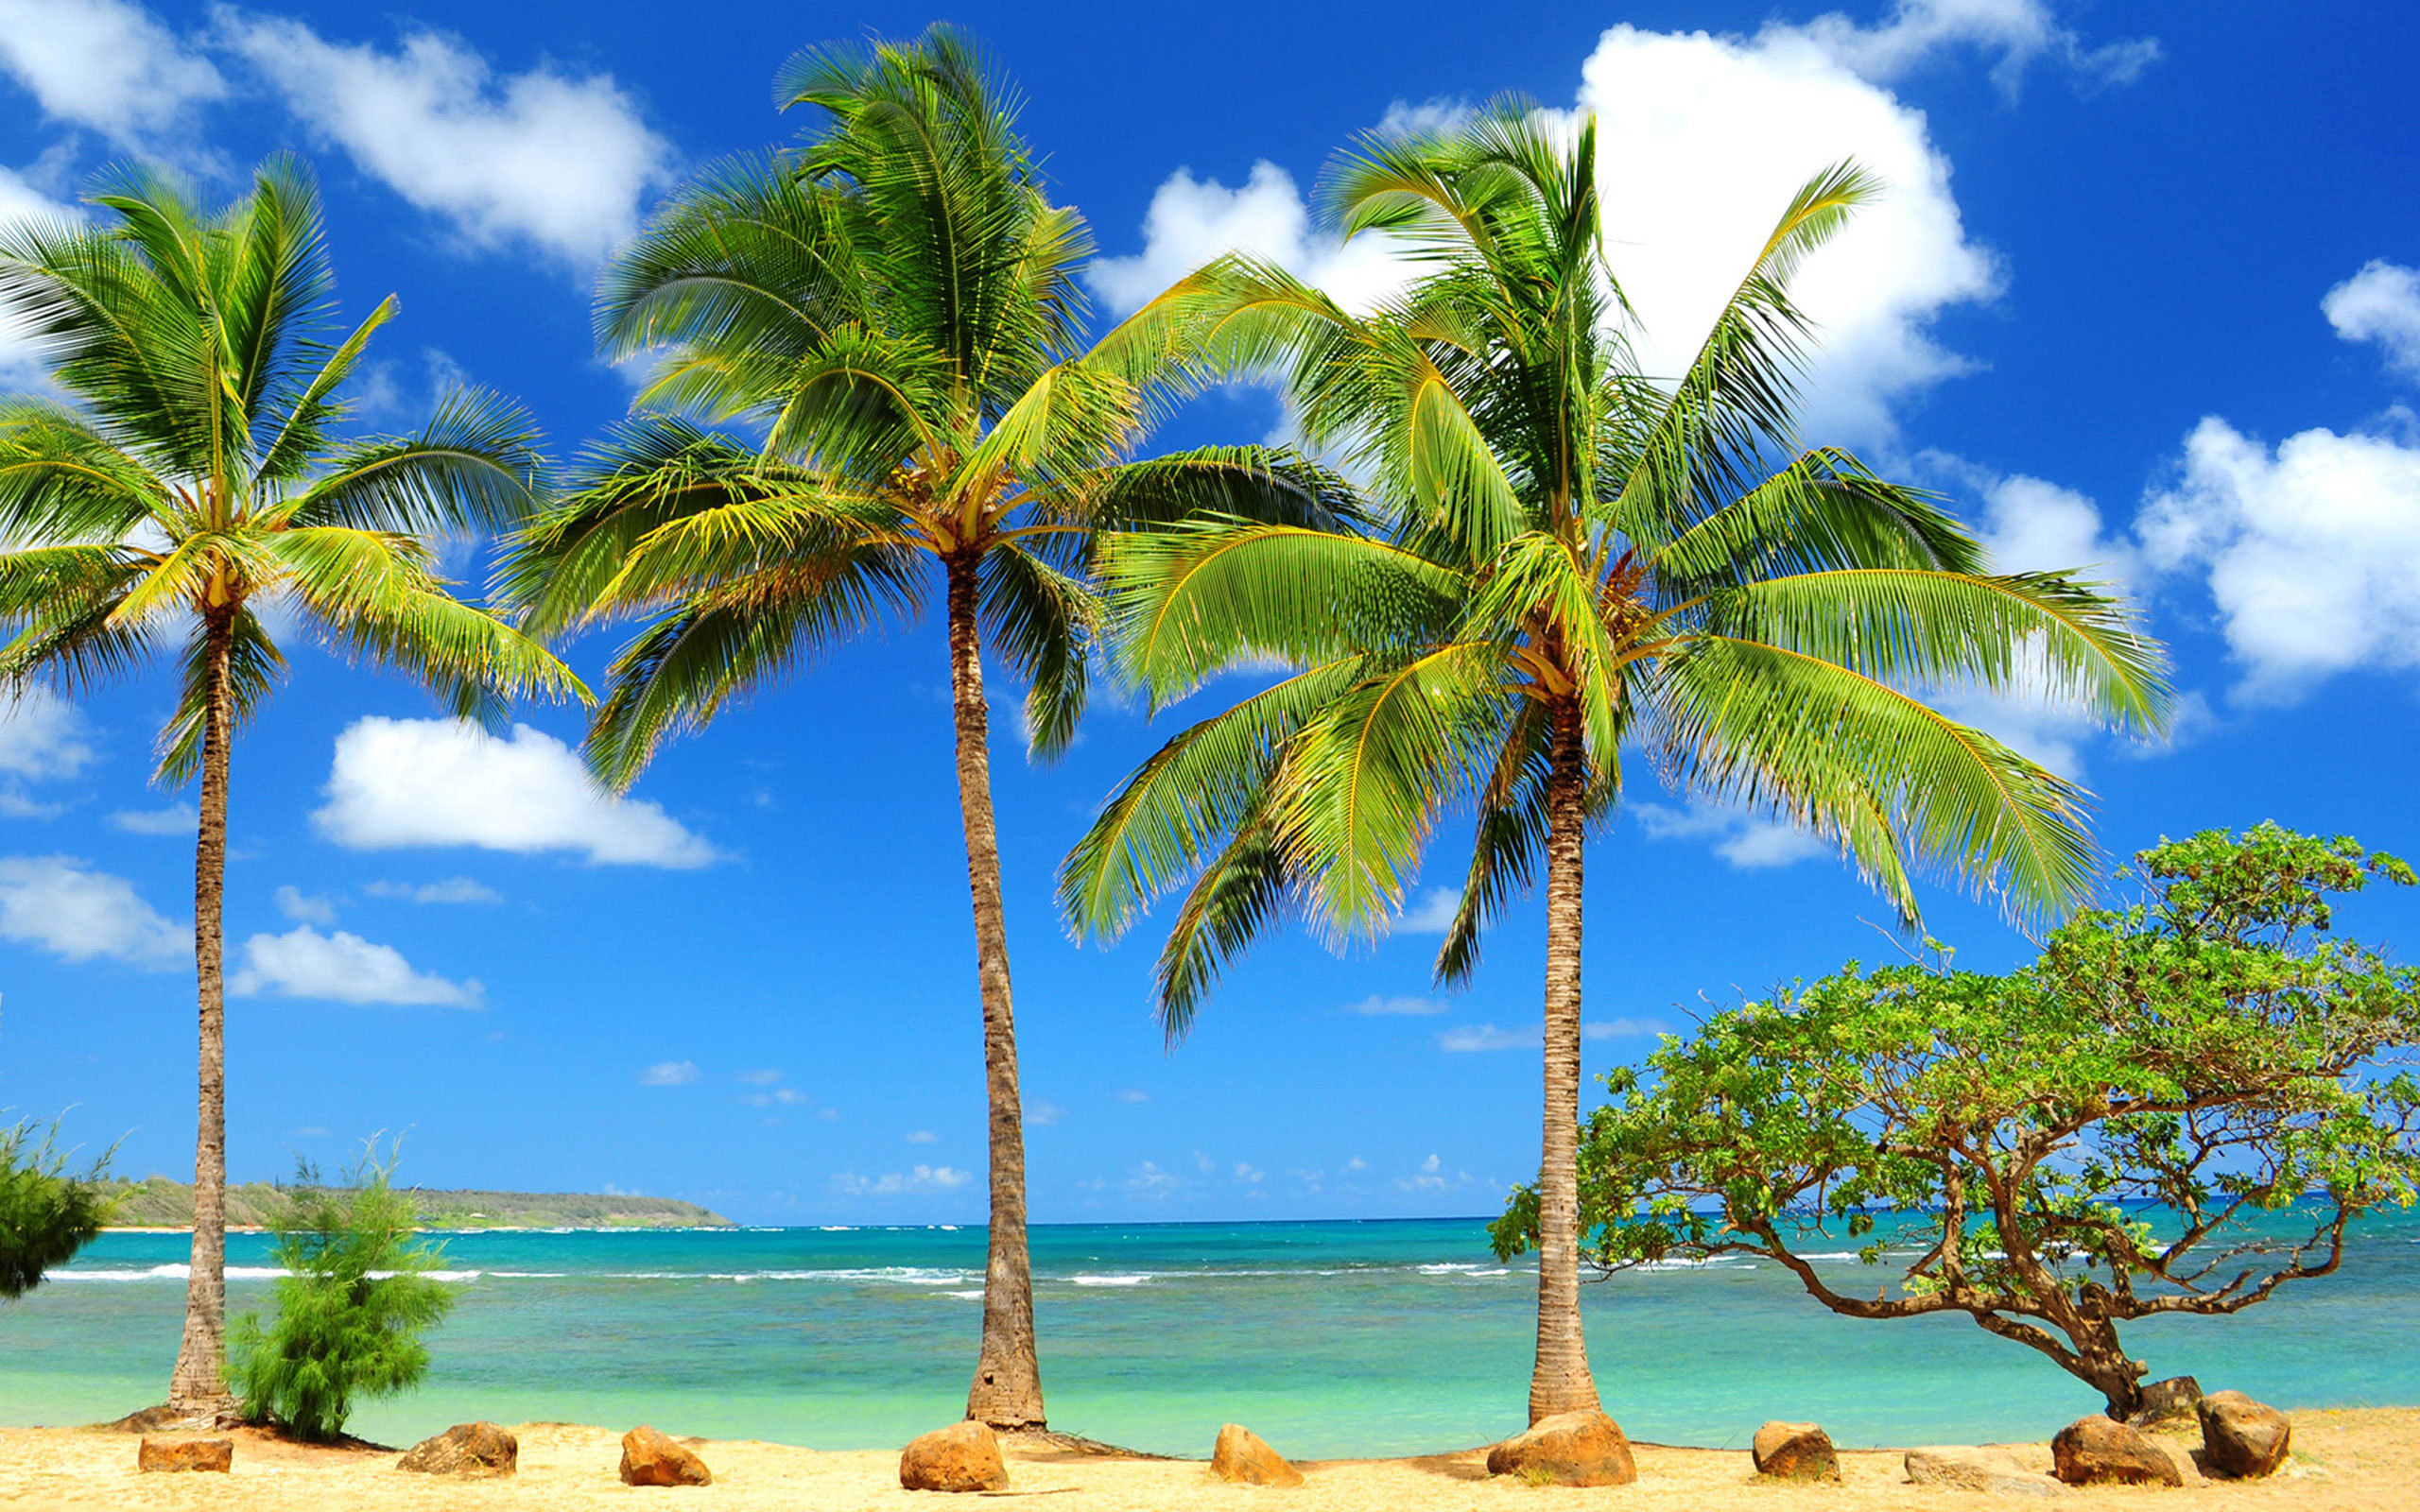 palms on a sandy beach